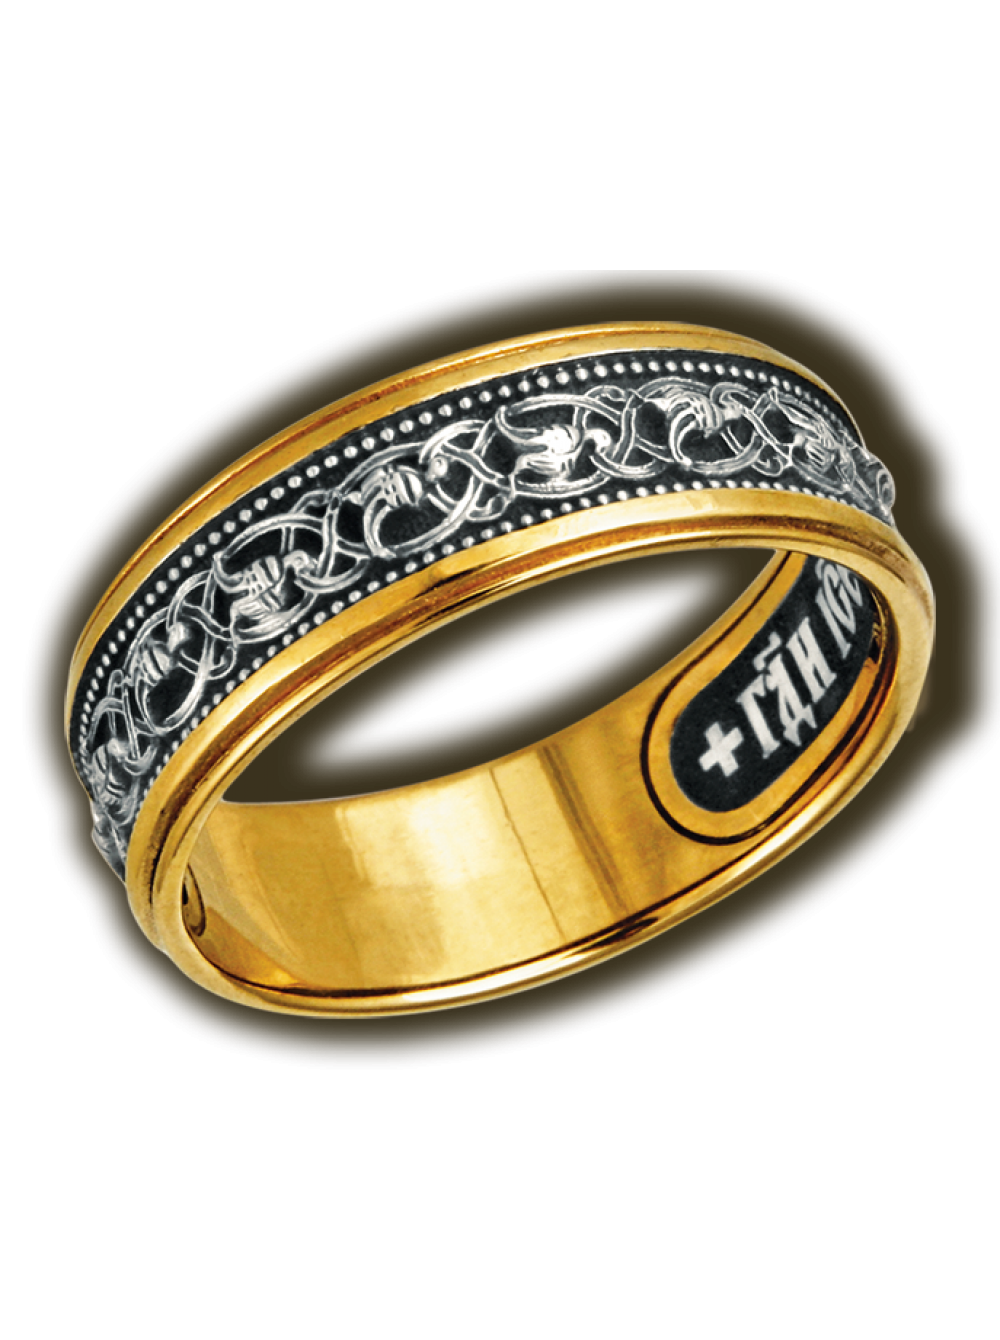 Мужские ювелирные кольца. Кольцо 153153858 Gold серебро. Православное кольцо с эмалью Ювелия. Мужское кольцо. Кольцо мужское золото.